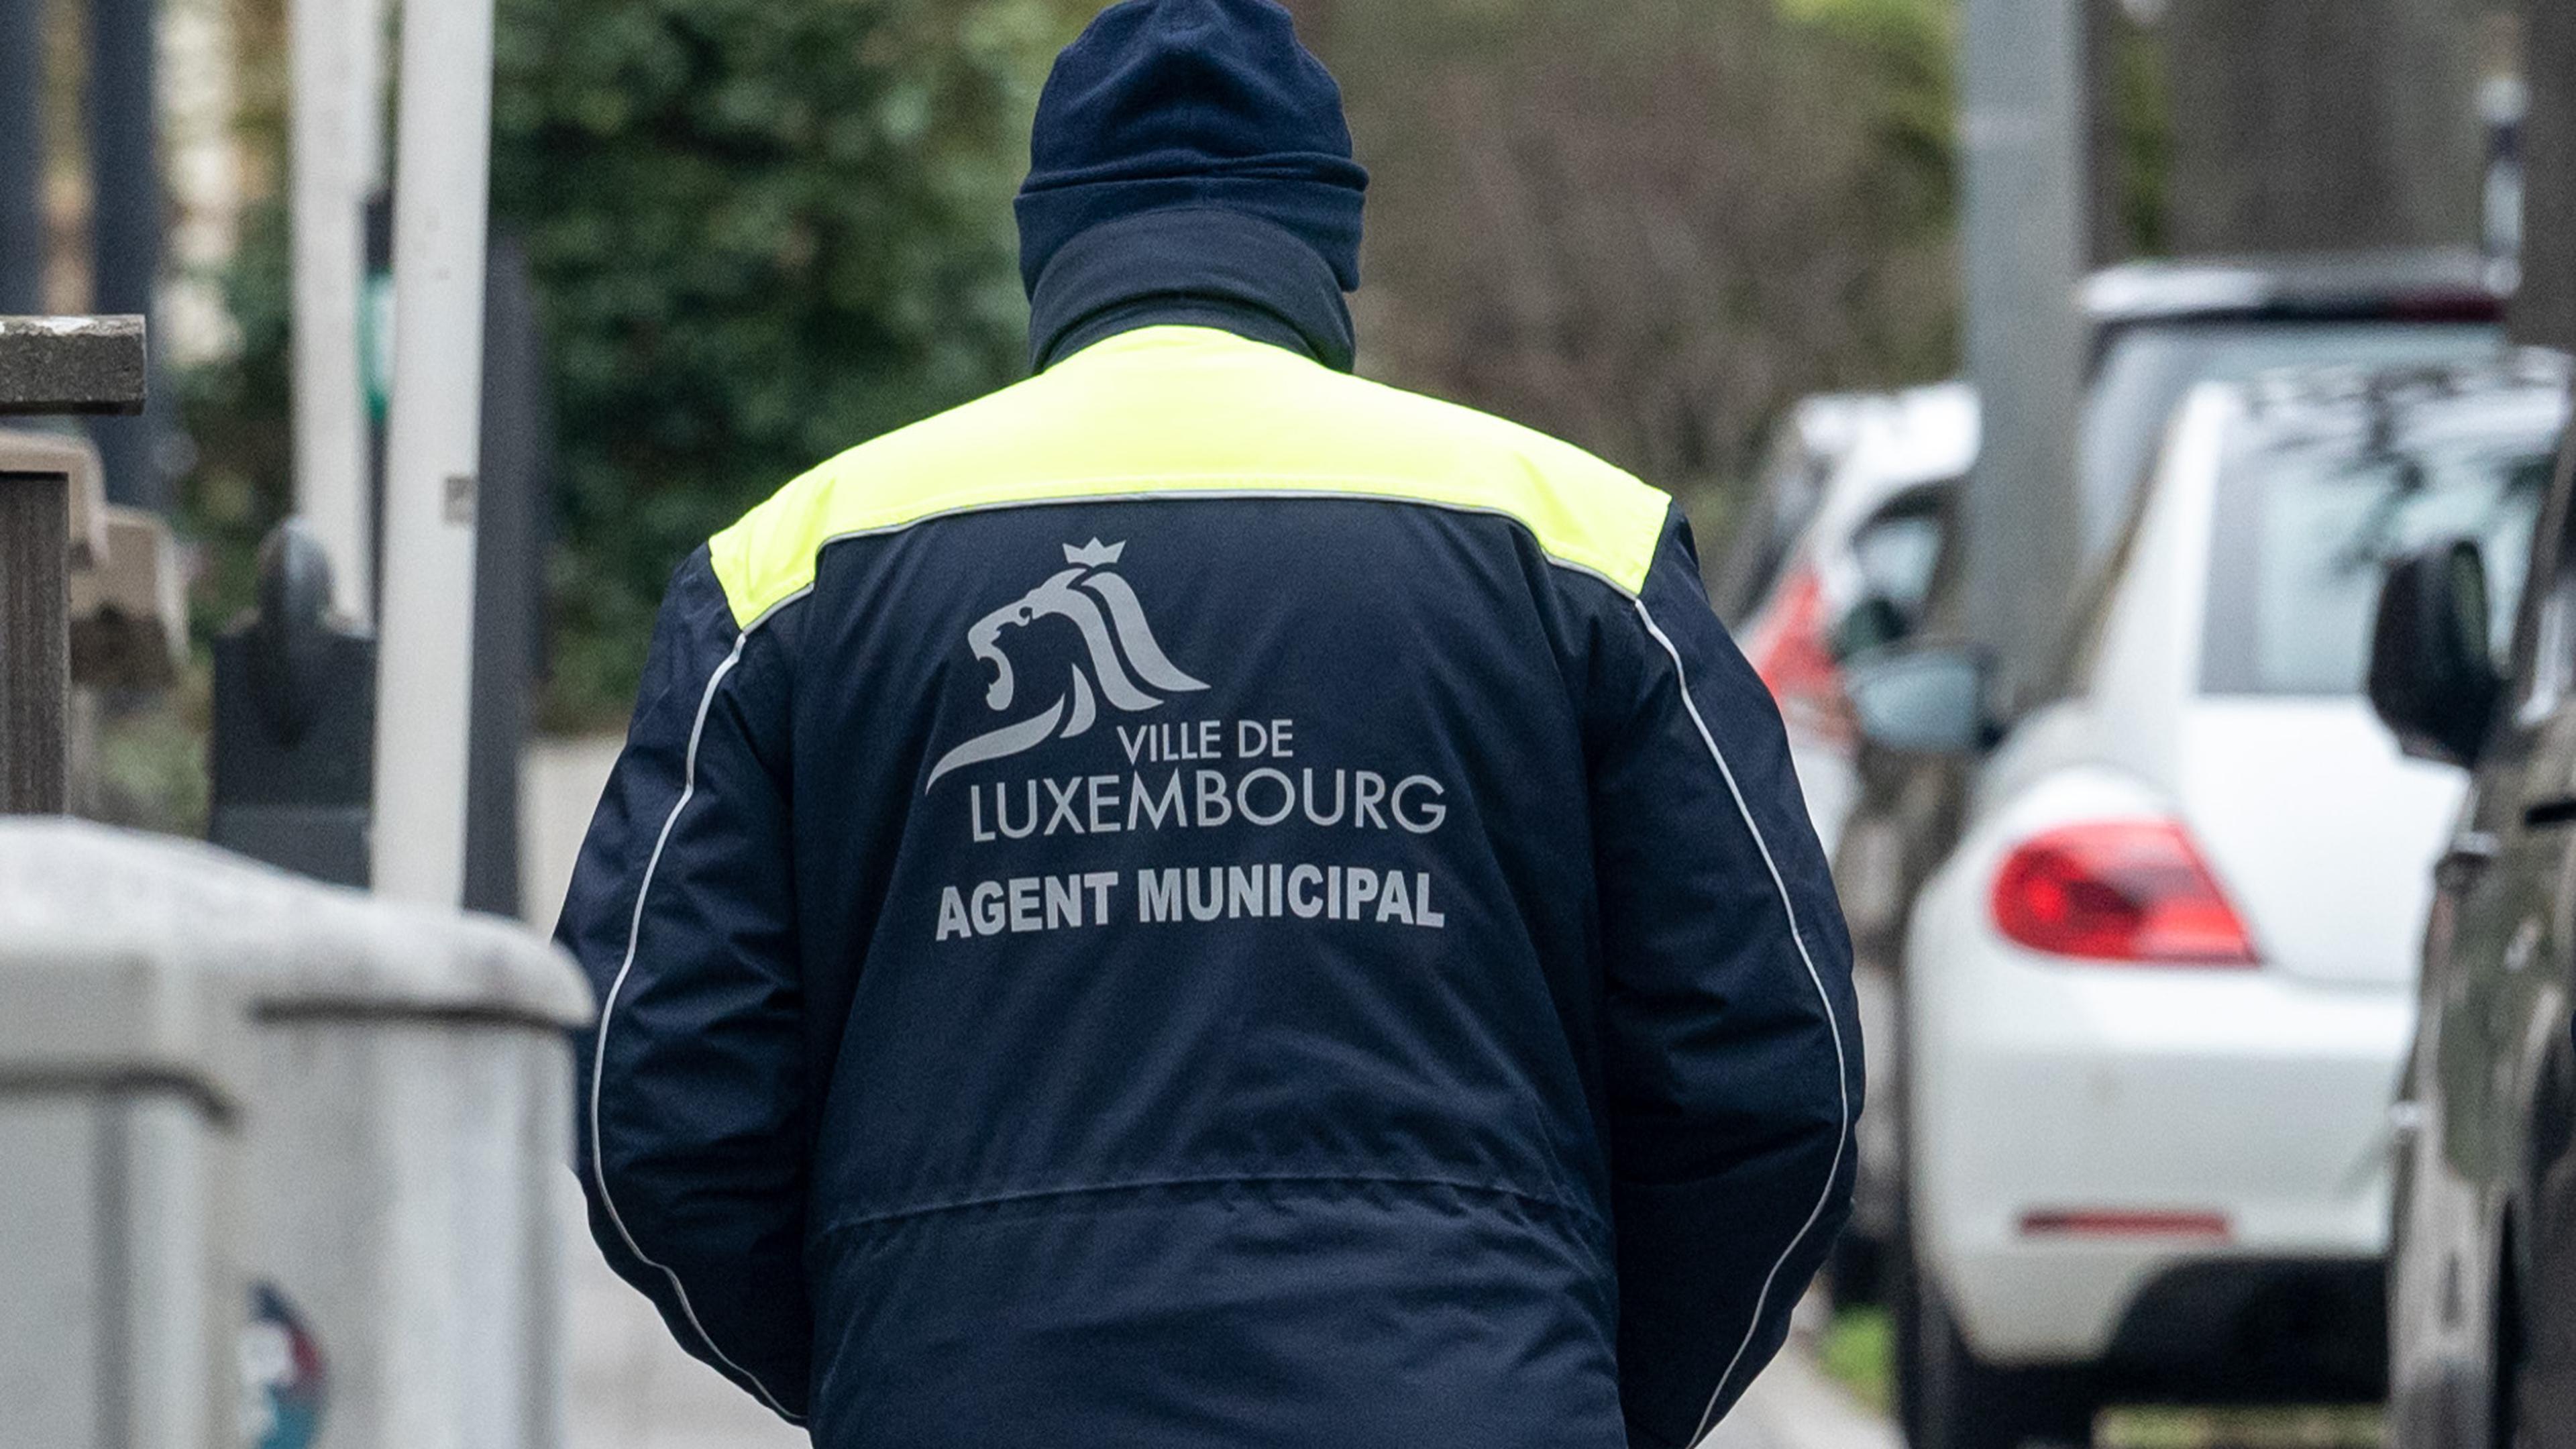 Les agents communaux de la Ville de Luxembourg ont reçu des pouvoirs supplémentaires pour imposer des amendes pour 17 nouvelles infractions à partir de lundi.